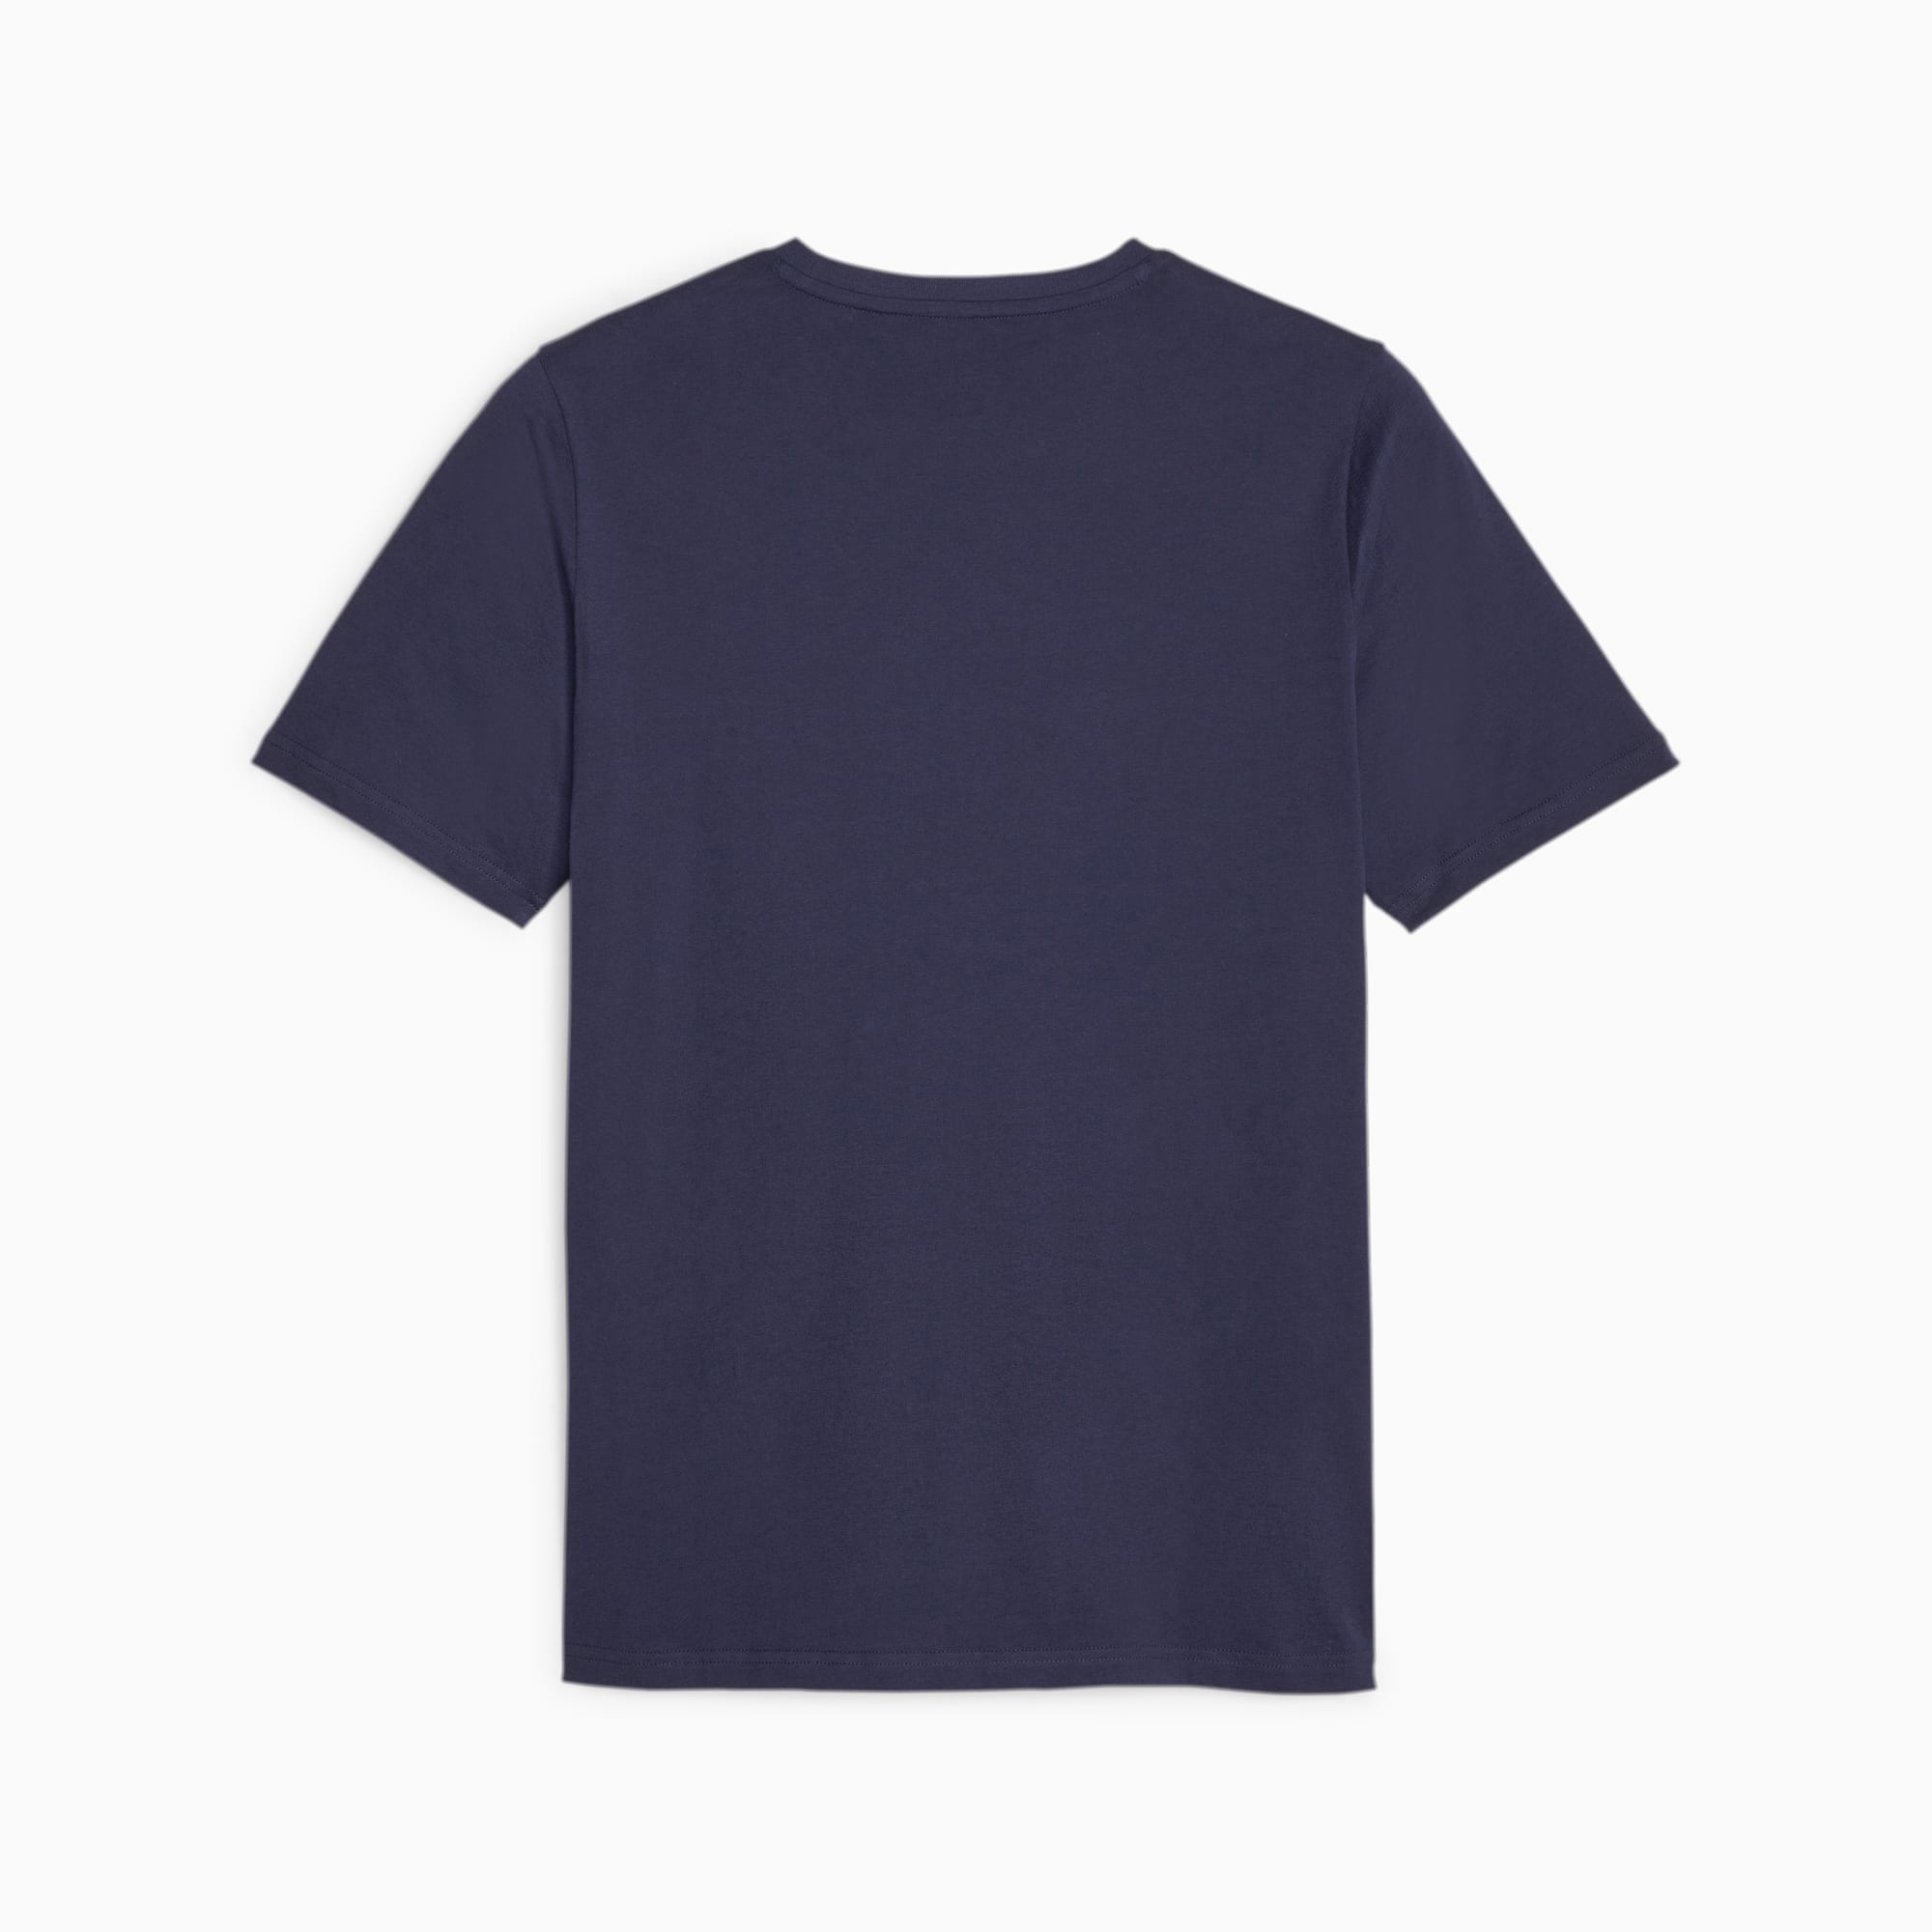 PUMA Ess+ Minimal Gold Men's T-Shirt, Dark Blue